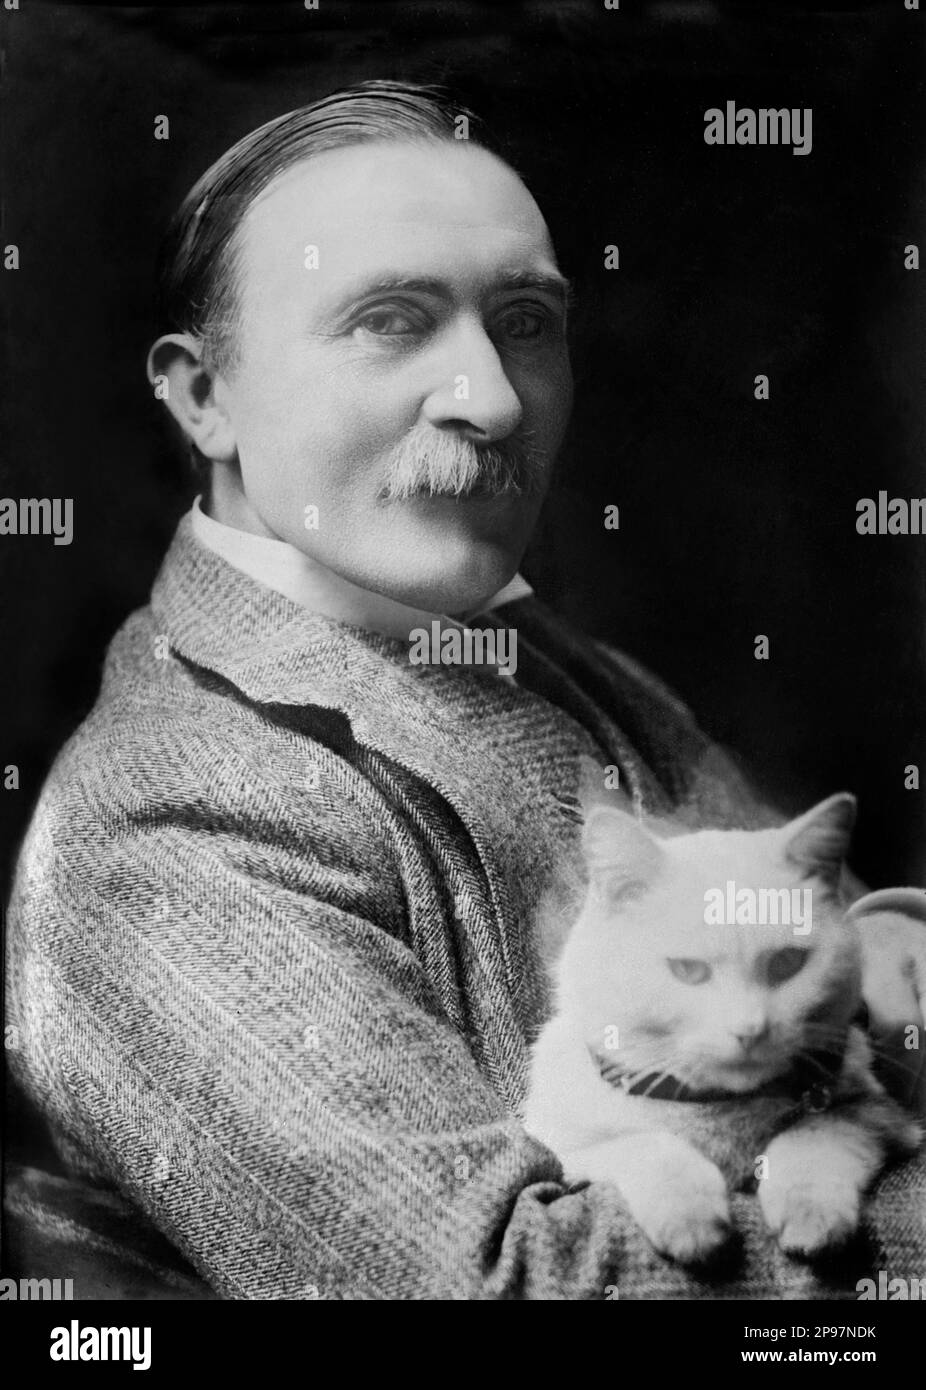 1910 ca , Londra, Gran Bretagna : il pittore vittoriano Sir PHILIP BURNE JONES ( 1861 - 1926 ) . Fu l'unico figlio di Edward Burne-Jones ( 1833 - 1898 ) e divenne anche artista. Trovò difficile lavorare all'ombra del suo famoso padre, Da qui la sua vita è un triste catalogo di talenti e opportunità sprecati .- Burne-Jones - gatto - gatto - animale domestico - animale domestico - RITRATTO - RITRatto - baffi - baffi - ARTE - ARTI VISIVE - ARTI VISIVE - PITTORE - colletto - colletto - EPOCA VITTORIANA - VICTORIANS - BELLE EPOQUE - ARTI VISIVE - ARTI VISIVE ---- ARCHIVIO GBB Foto Stock